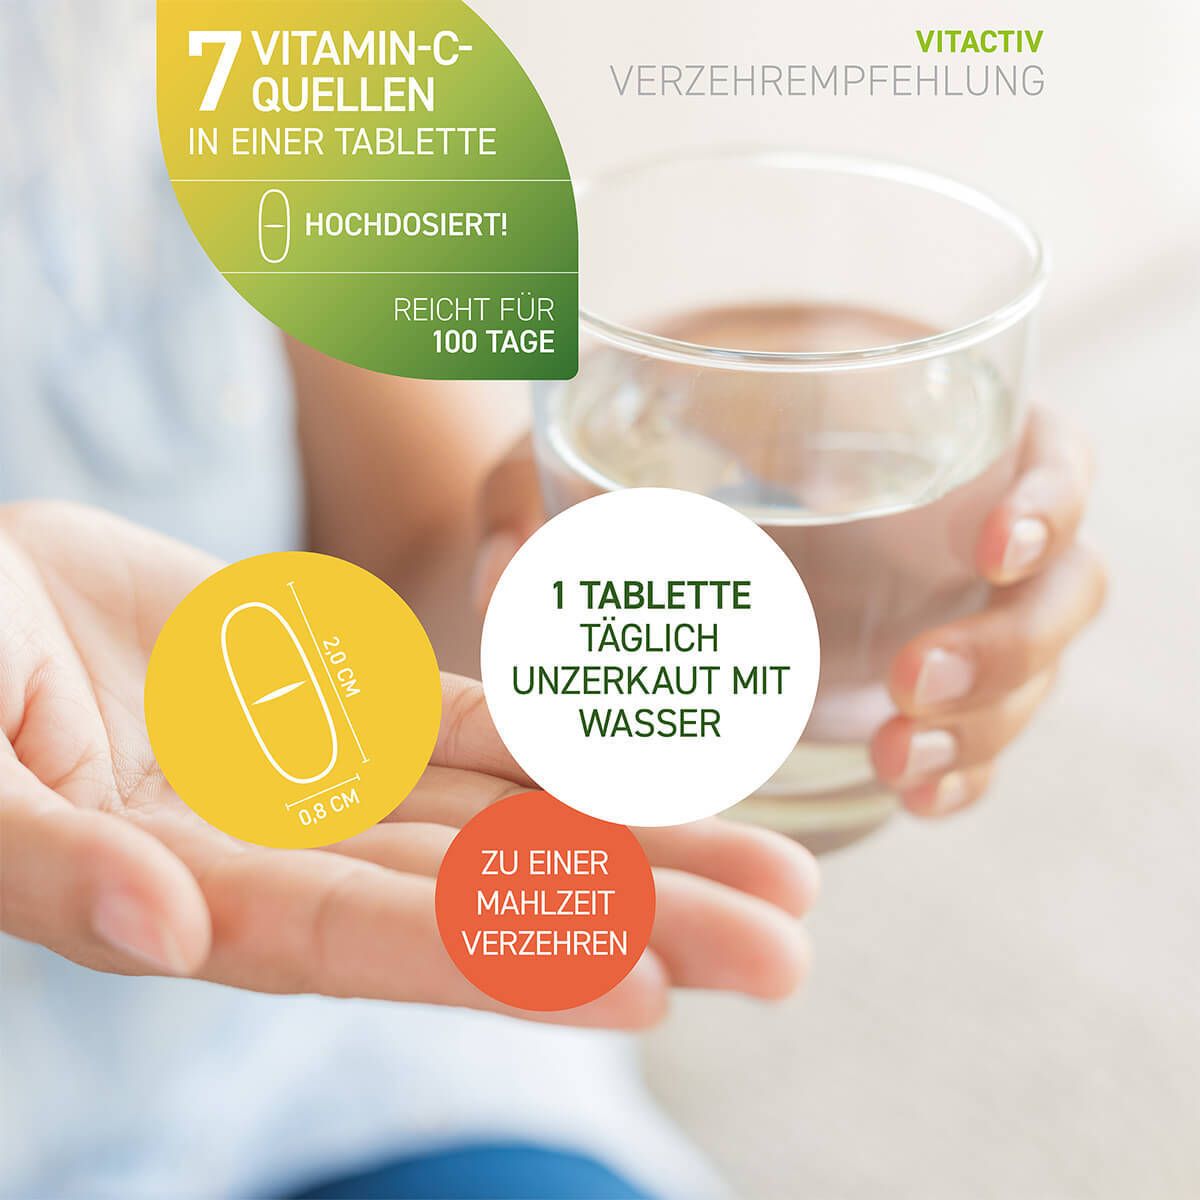 Vitactiv VITAMIN C 1000 mg Complex + Acerola